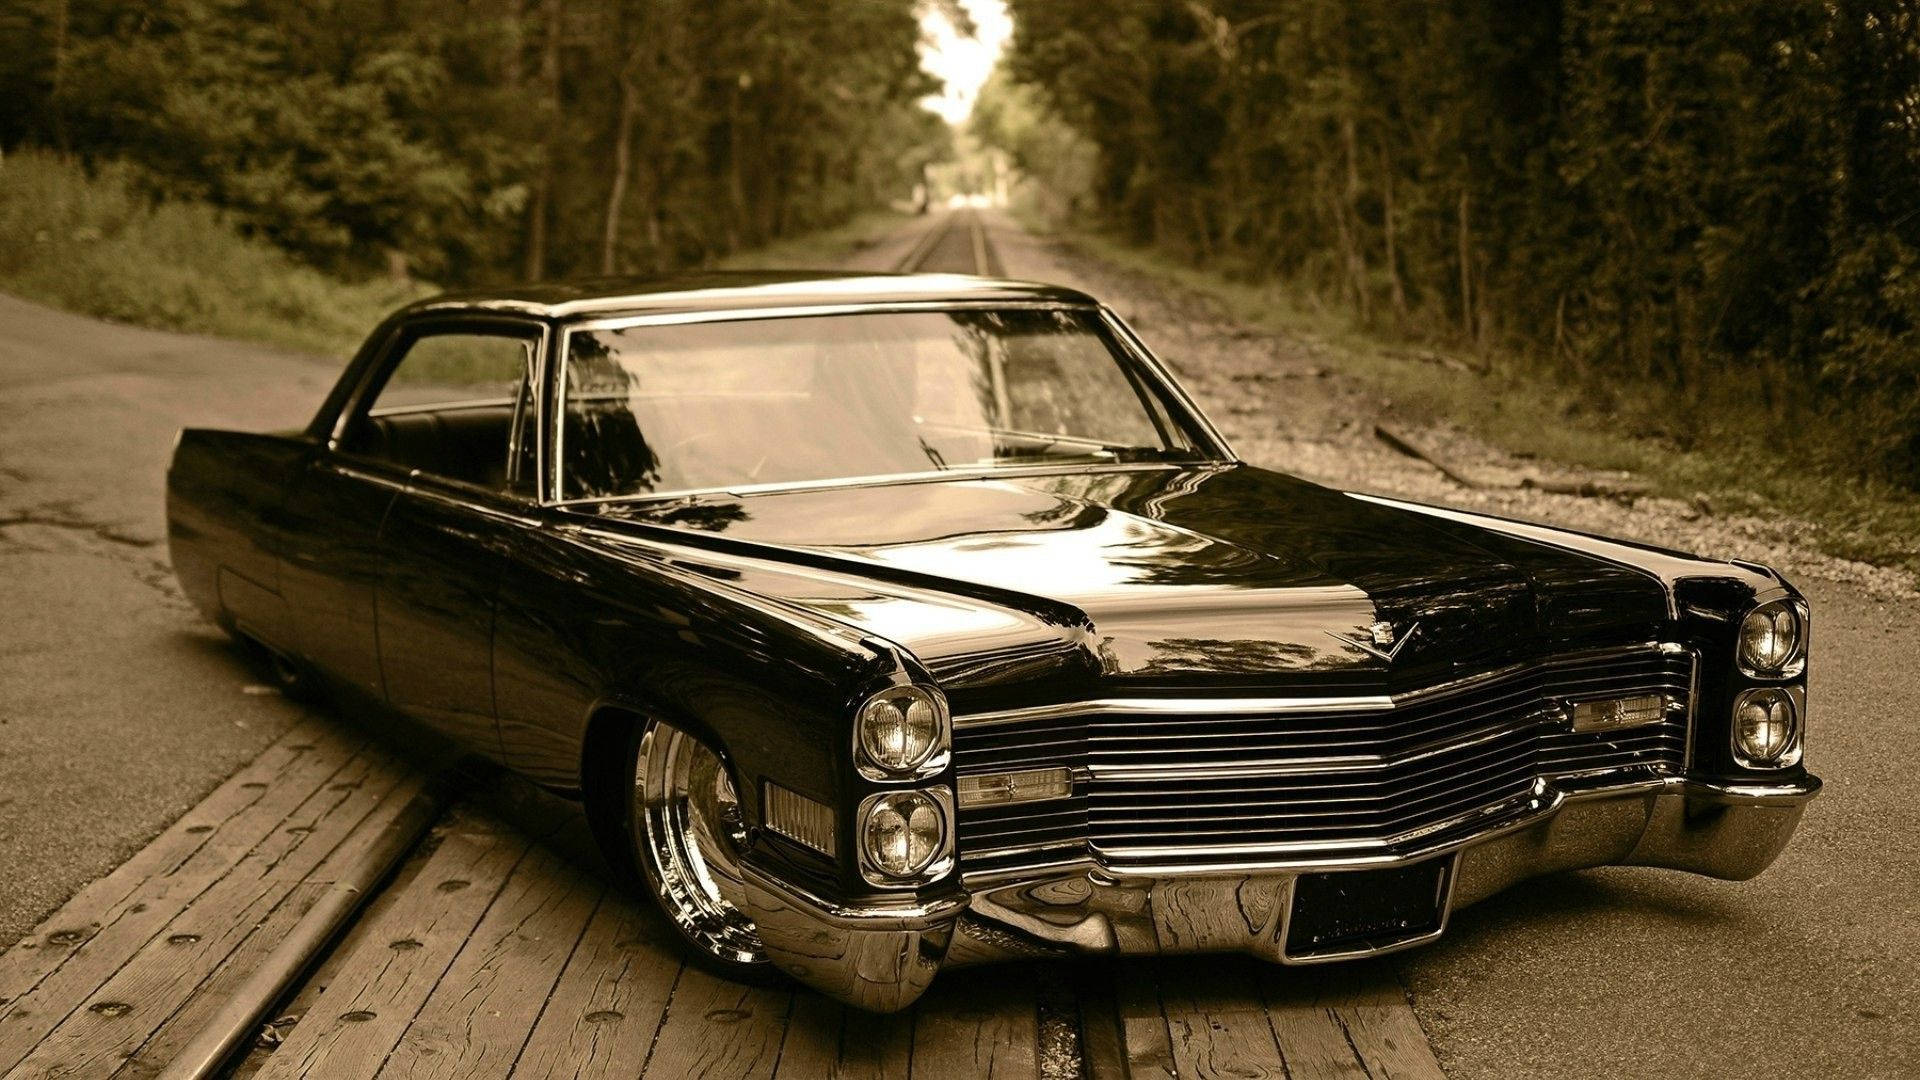 Lowered Vintage Cadillac El Dorado Background